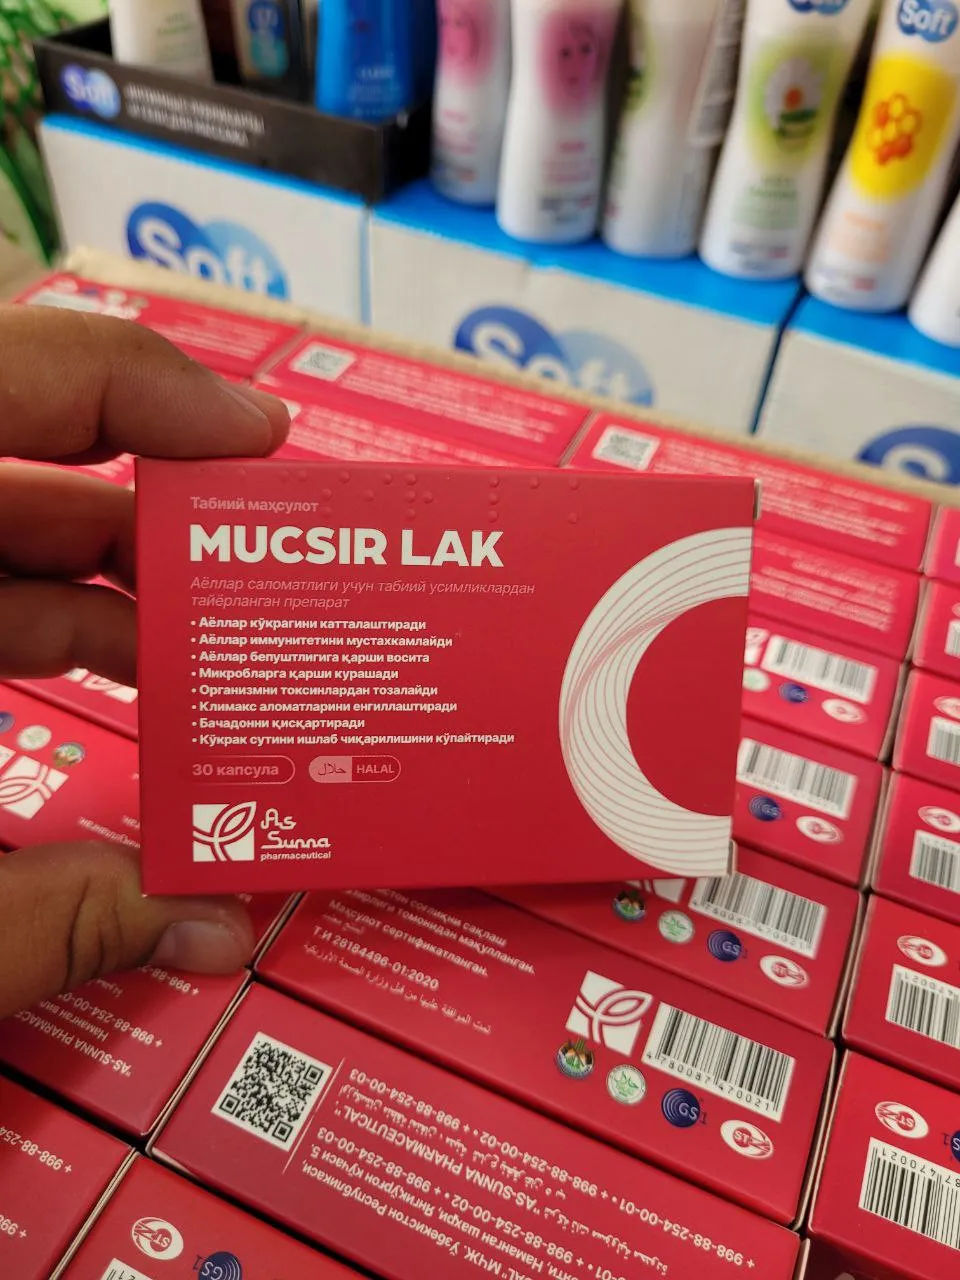 Препарат для женского здоровья Mucsir lak#2